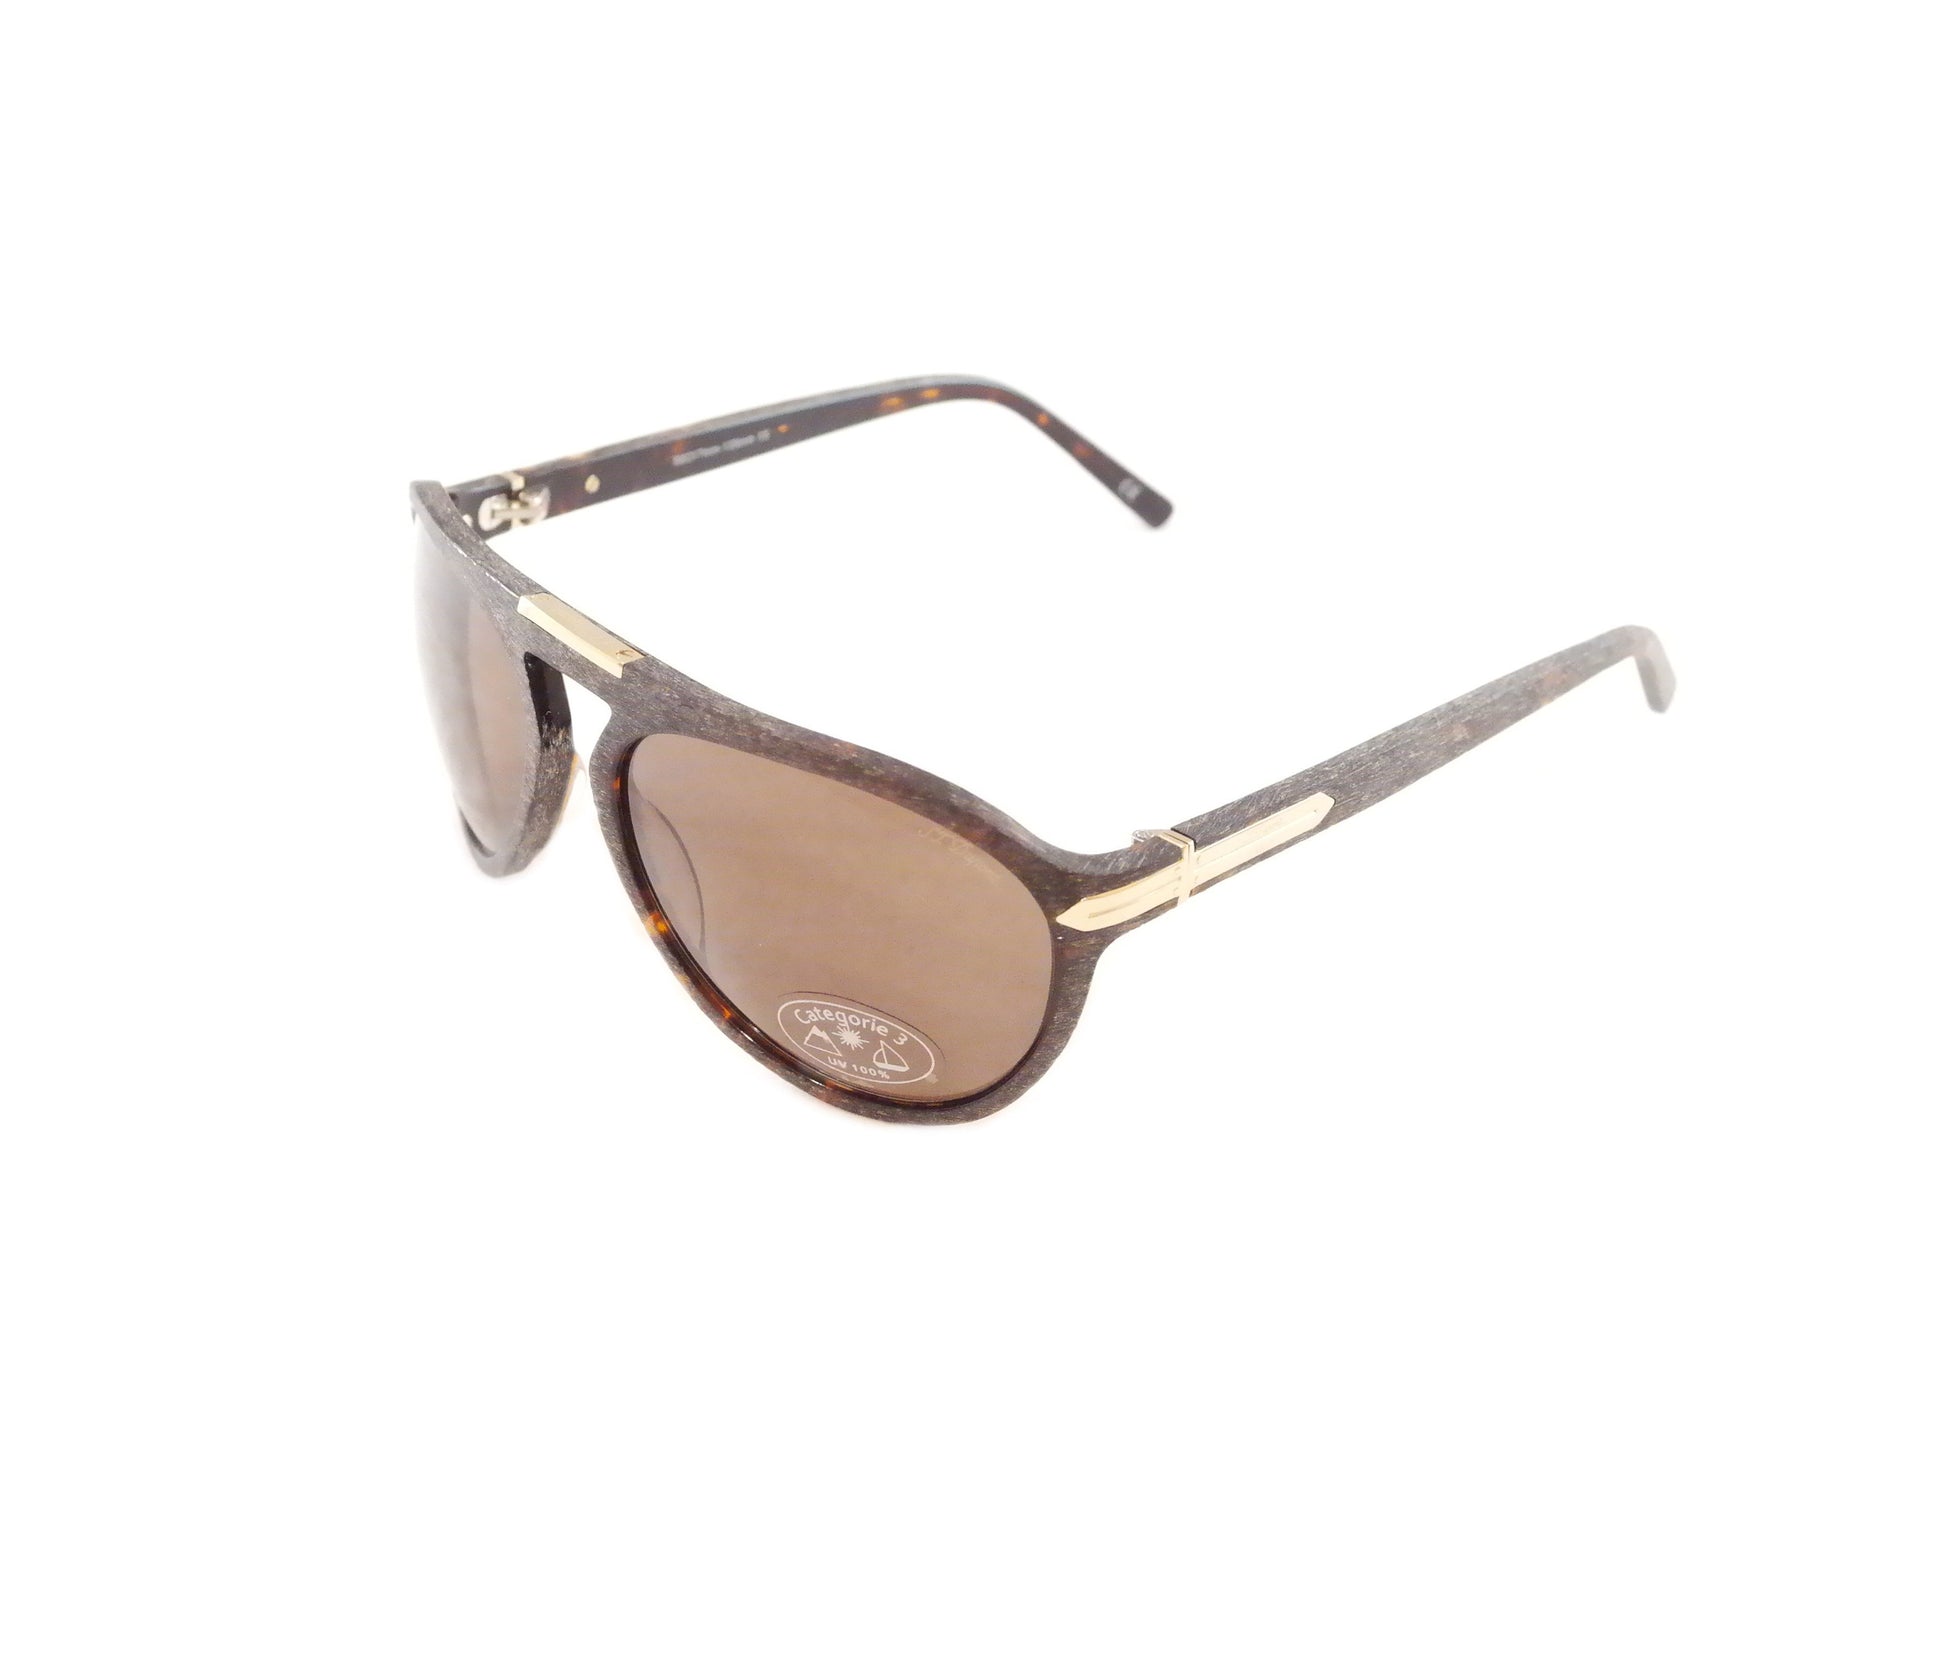 S. T. Dupont Sunglasses ST013 Polarized Plastic Italy 100% UV 3 Lenses 58-17-135 - Frame Bay